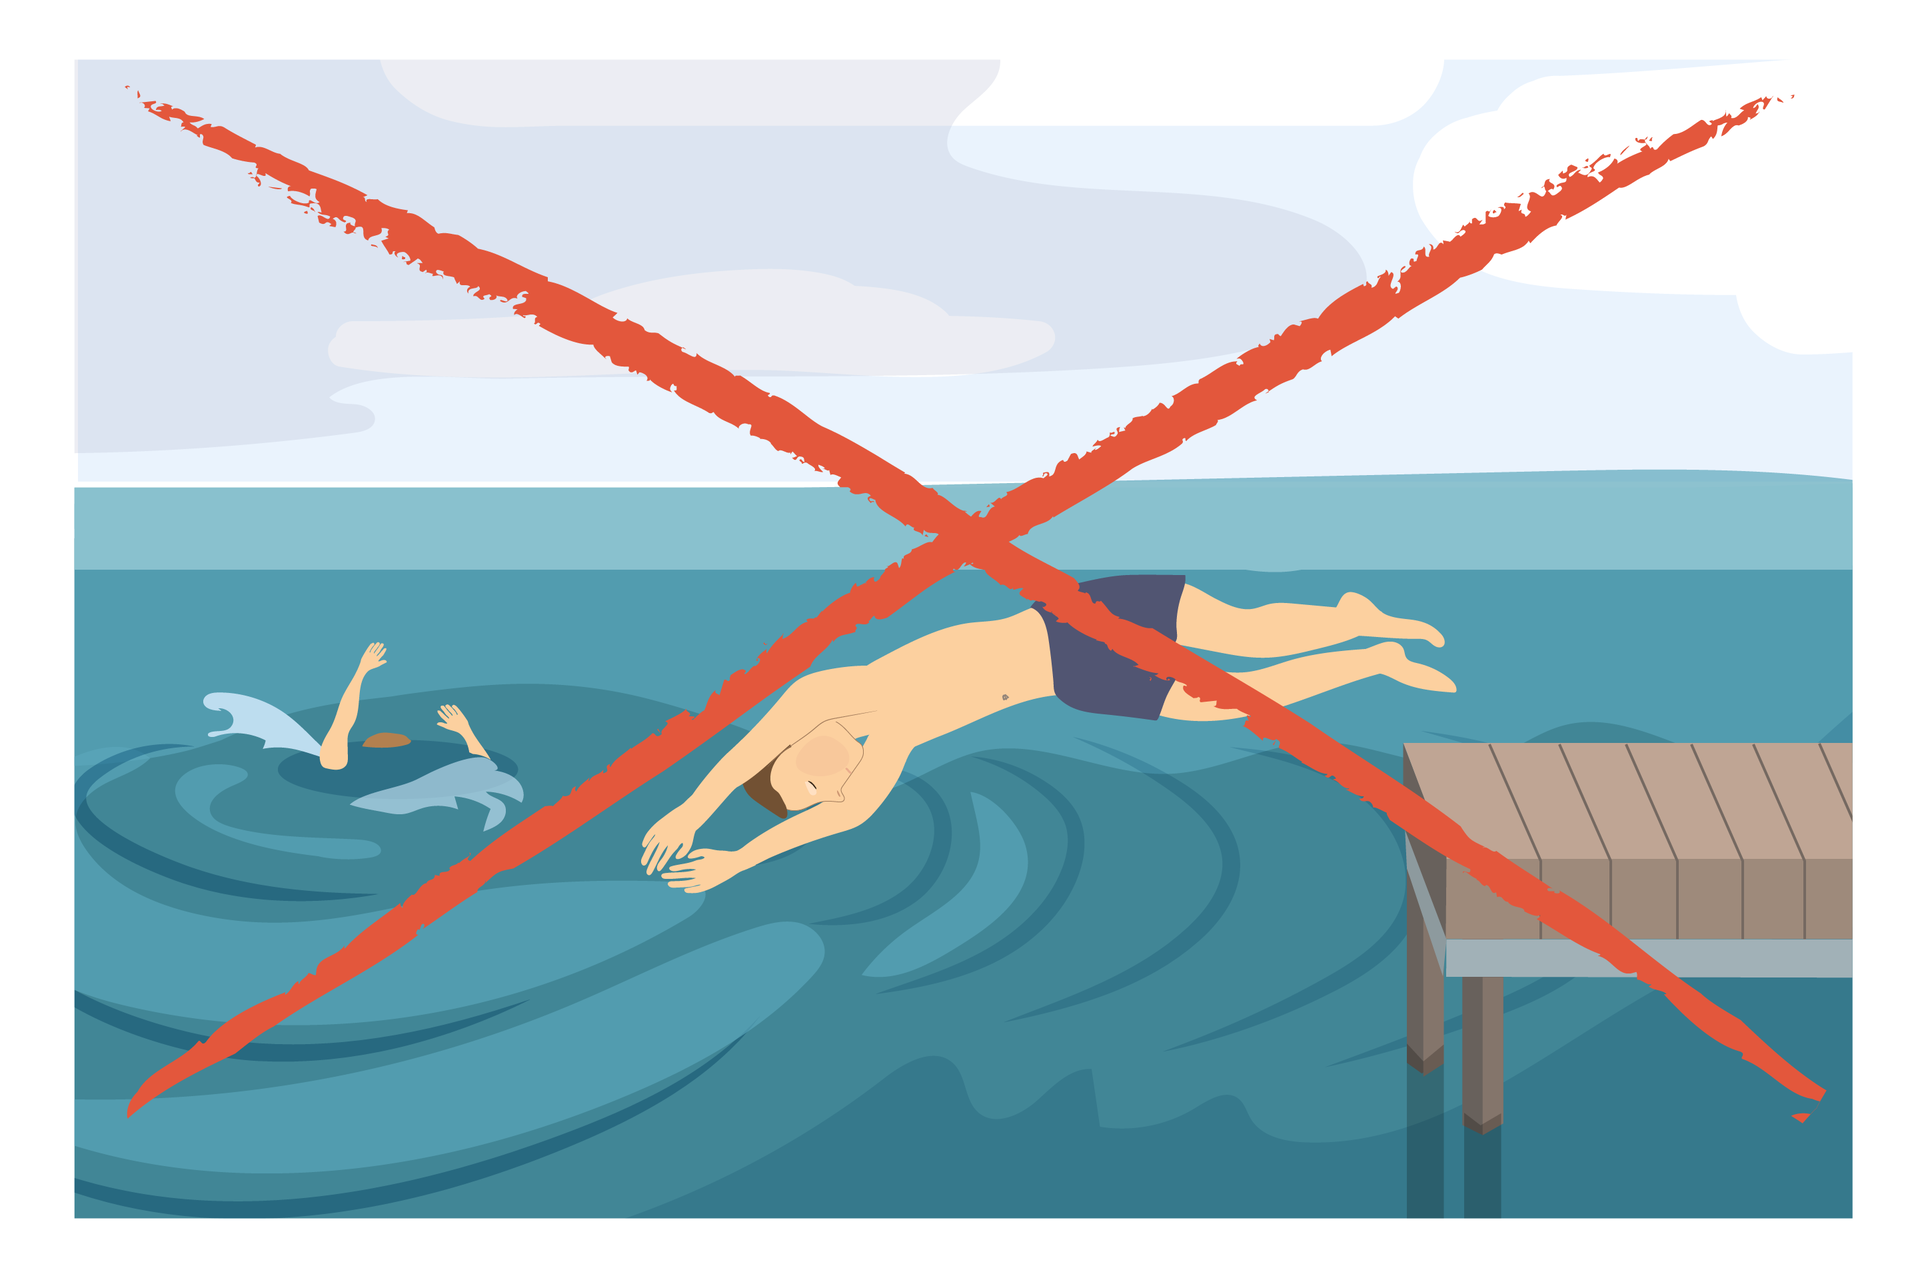 Ilustracja 6. Po prawej stronie ilustracji drewniany pomost. Z pomostu skacze do wody na główkę mężczyzna. Na lewo od pomostu osoba tonąca. Cała ilustracja przekreślona dwoma krzyżującymi się czerwonymi liniami. Instrukcja: nie skacz do wody na główkę.